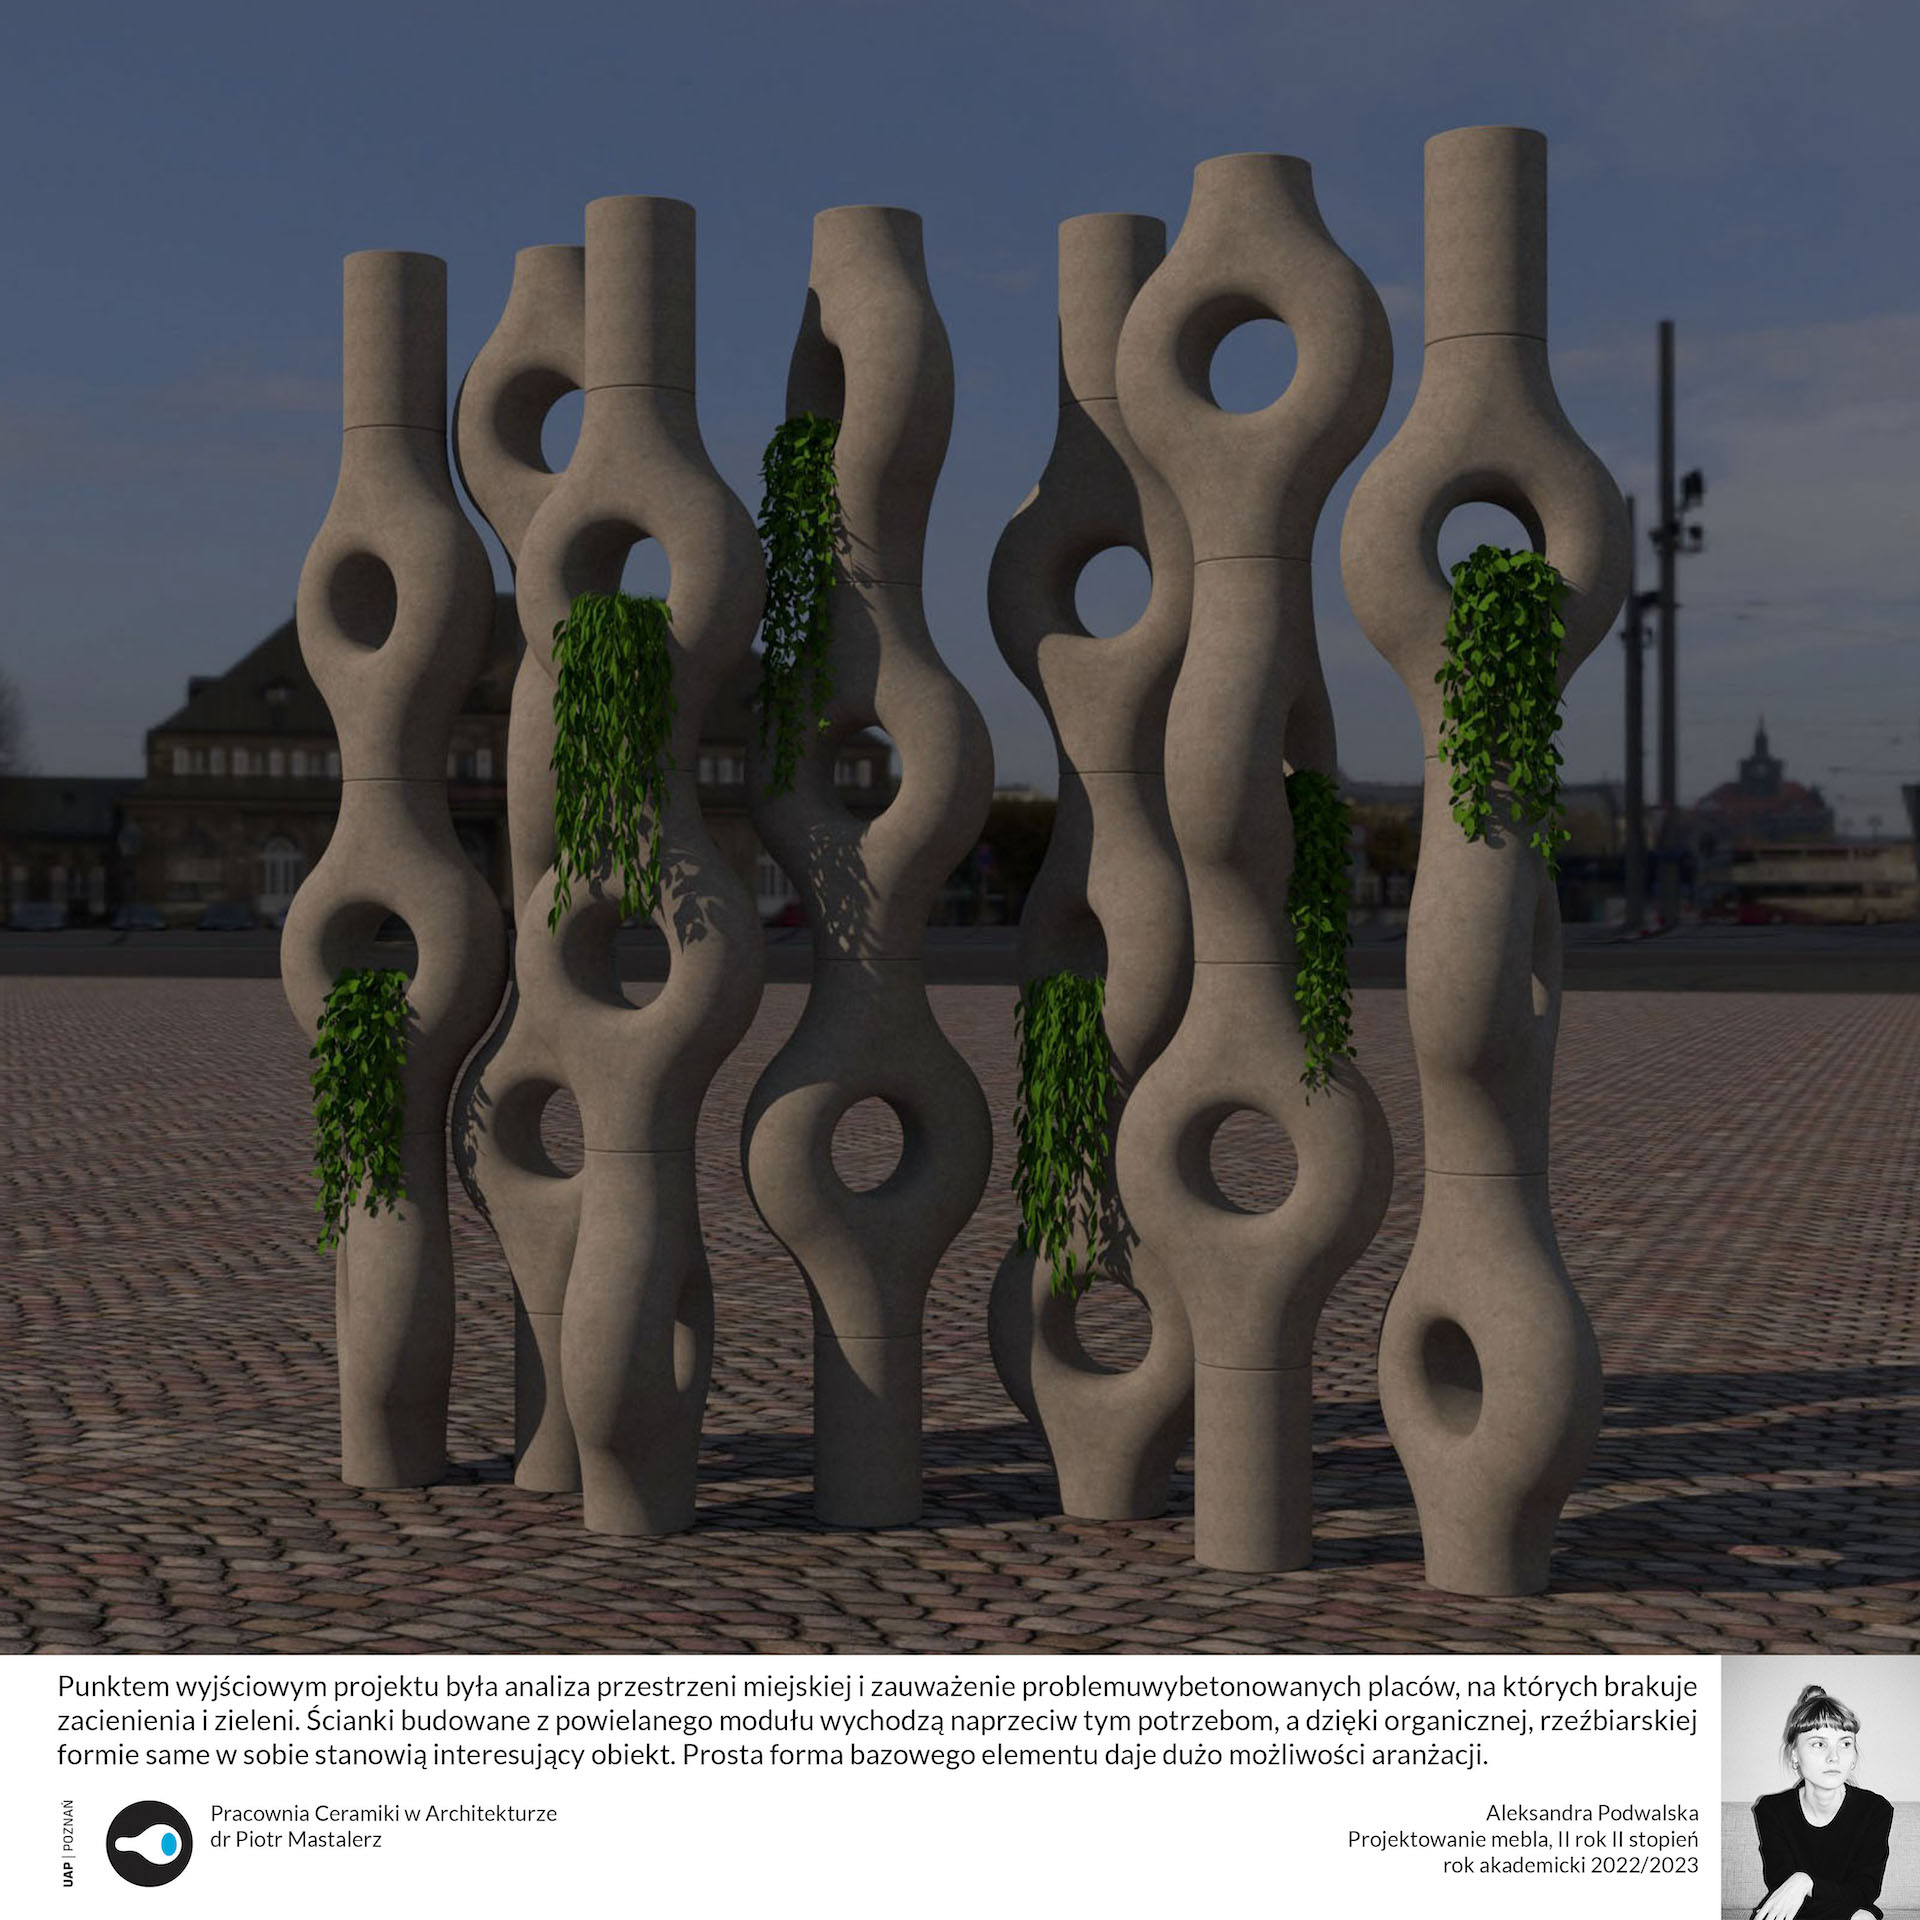 Opis alternatywny: Plansza ukazuje wizualizację projektu. Widać na niej plac miejski i obiekt składający się z modułów o organicznym kształcie ustawionych w siedem wysokich kolumn w dynamicznym układzie. Z modułów wyrastają rośliny.